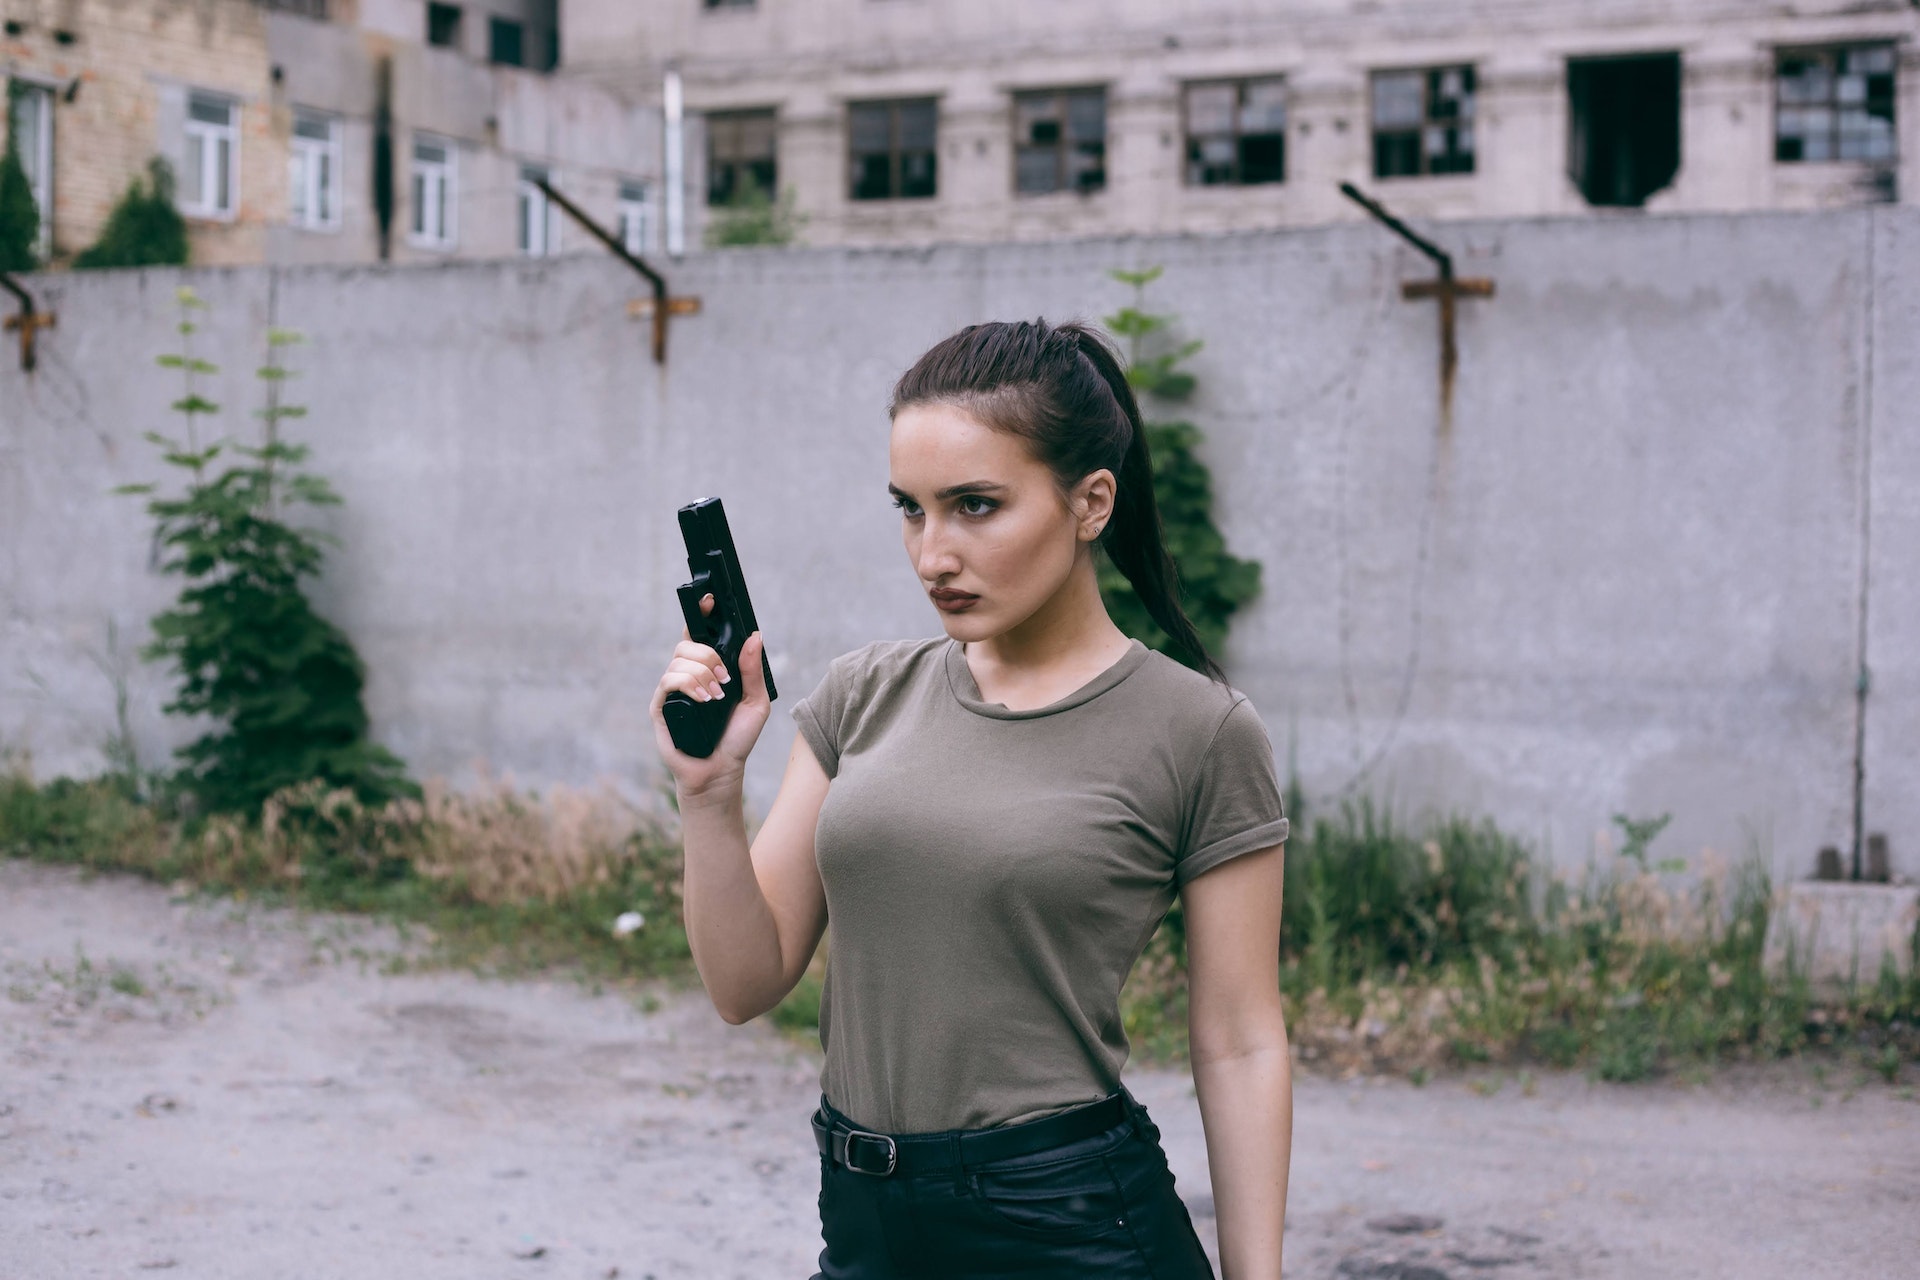 Fierce Woman Holding a Gun